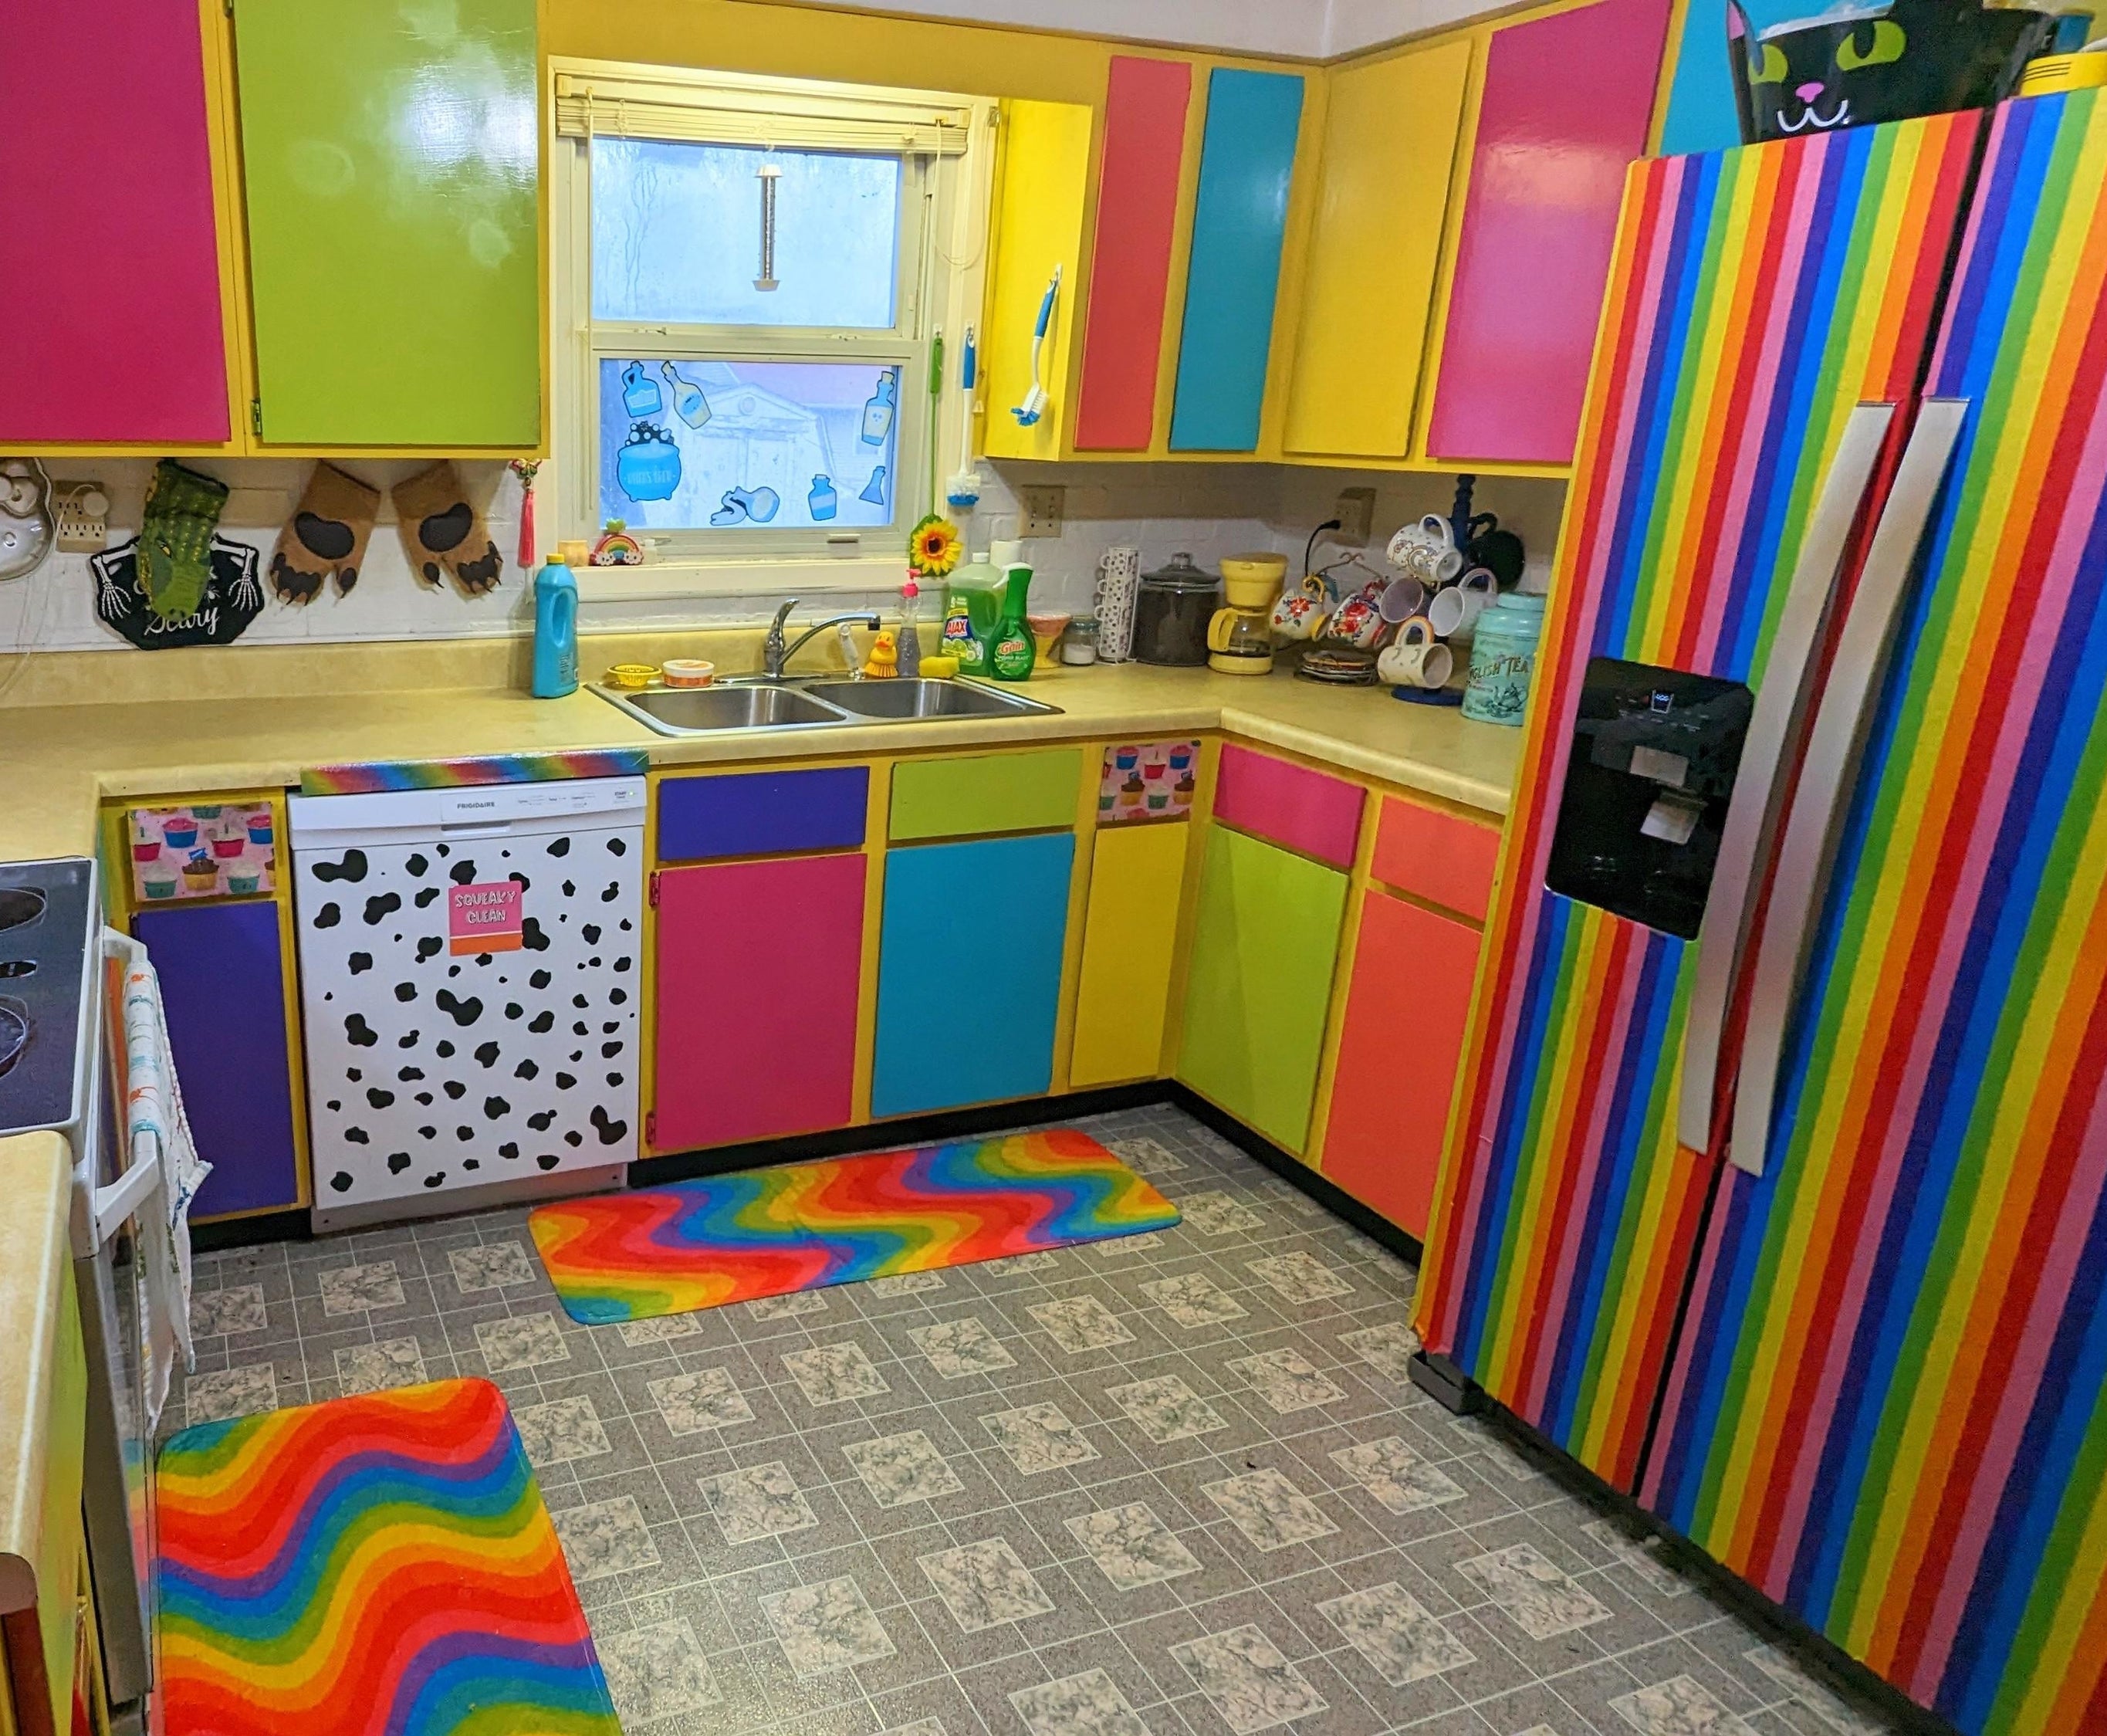 Rainbow patterns in a kitchen